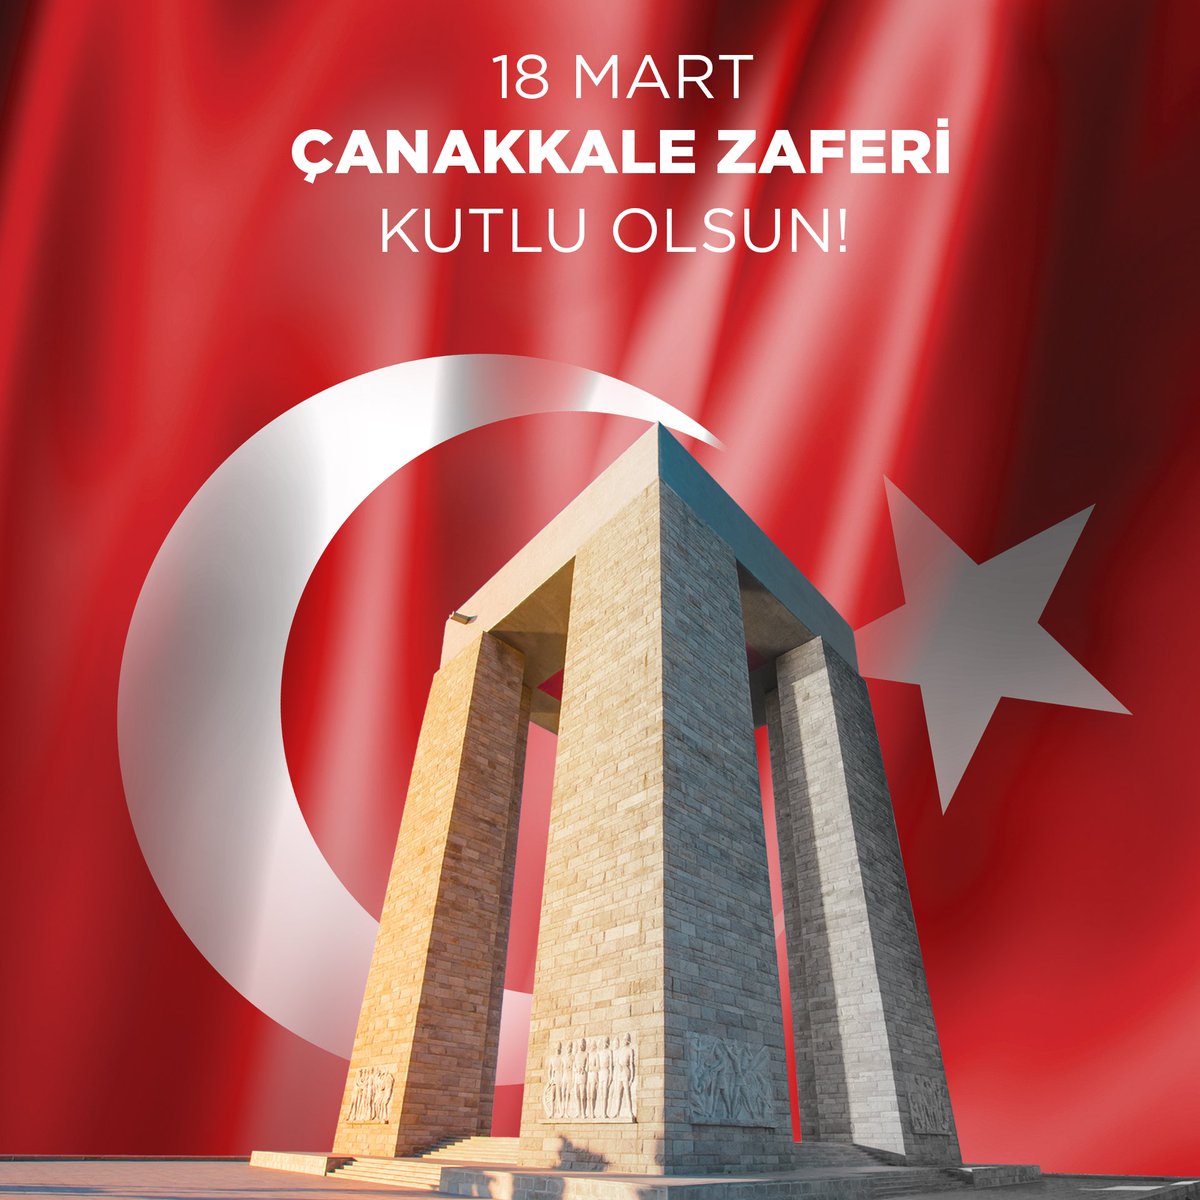 Başta Ulu Önder Mustafa Kemal Atatürk olmak üzere Çanakkale Zaferi’nin kahramanlarını sevgi, saygı ve minnet ile anıyoruz! #18MartÇanakkaleZaferi